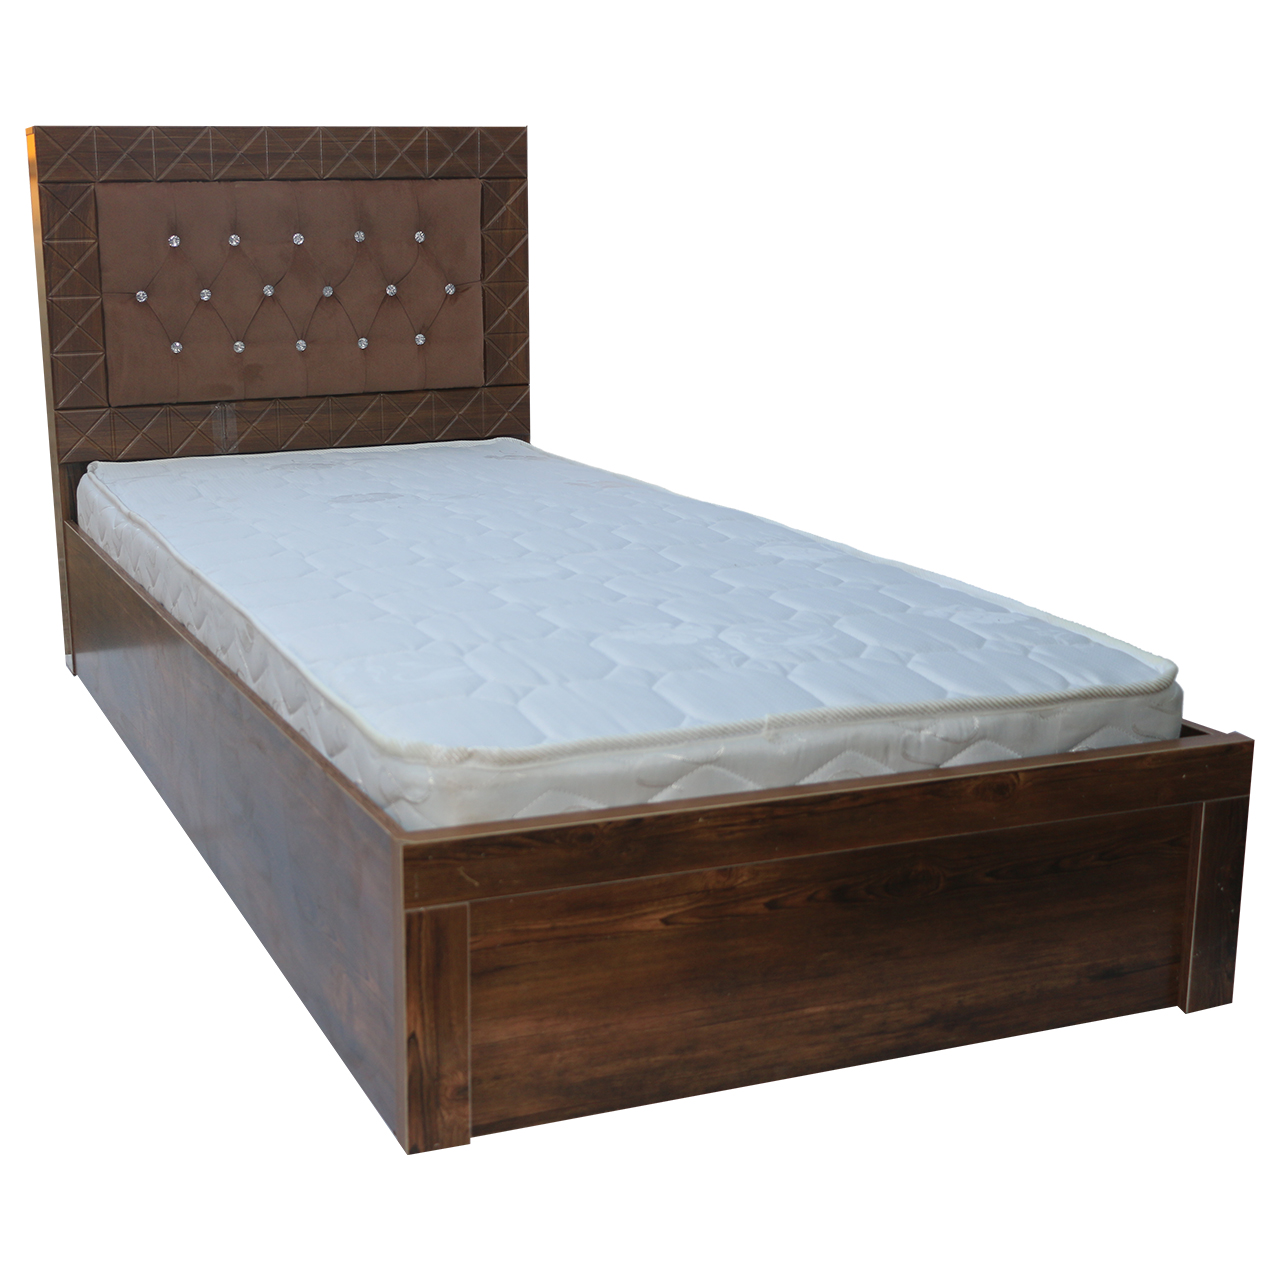 تخت خواب یکنفره مدل Tkt0001 سایز95×215سانتیمتر